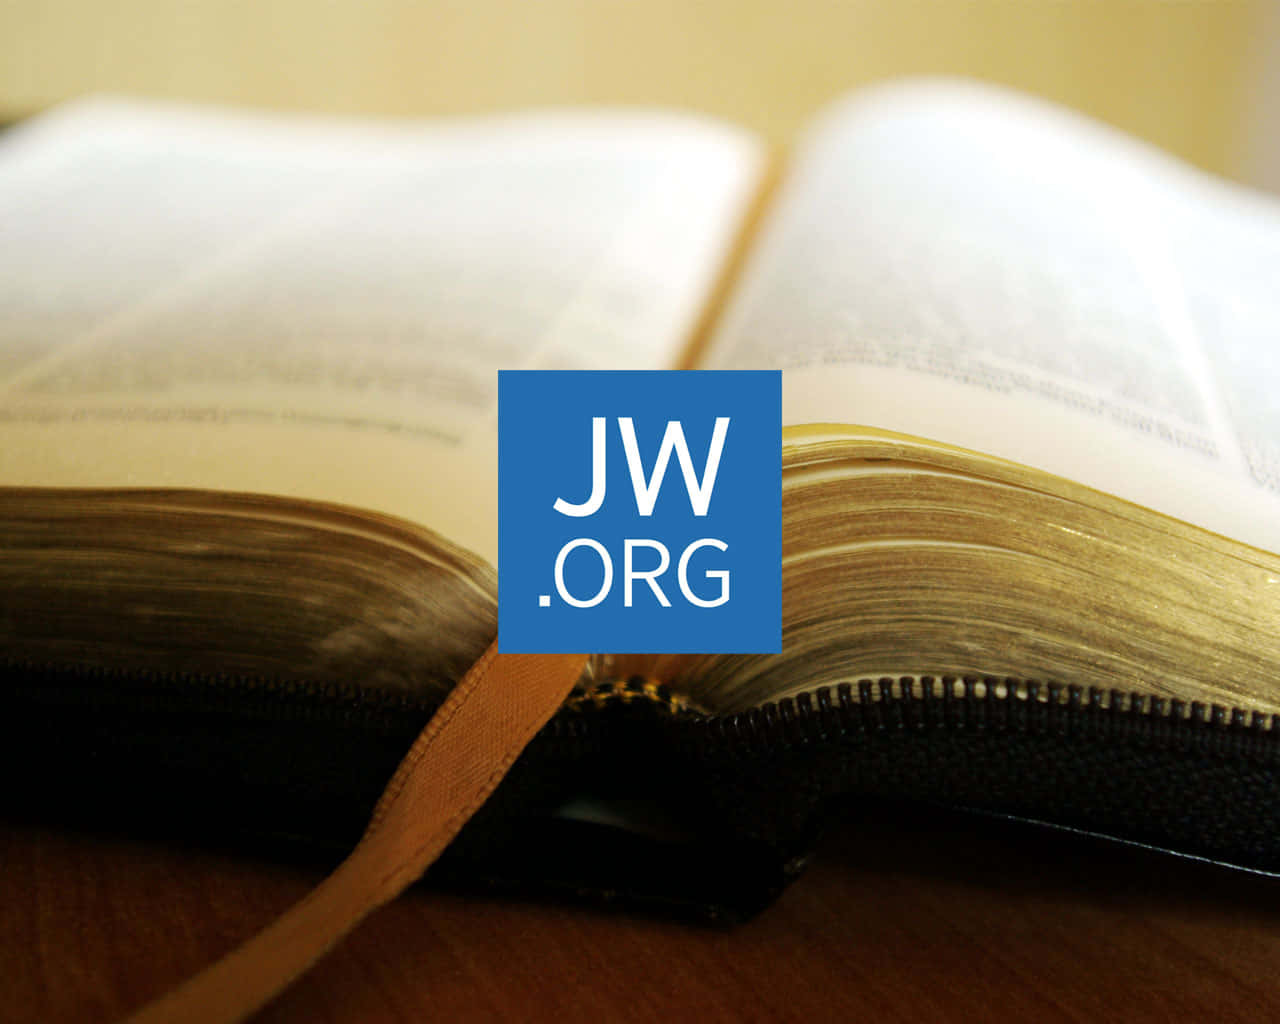 Jworg Logo On Image Of Bible Wallpaper